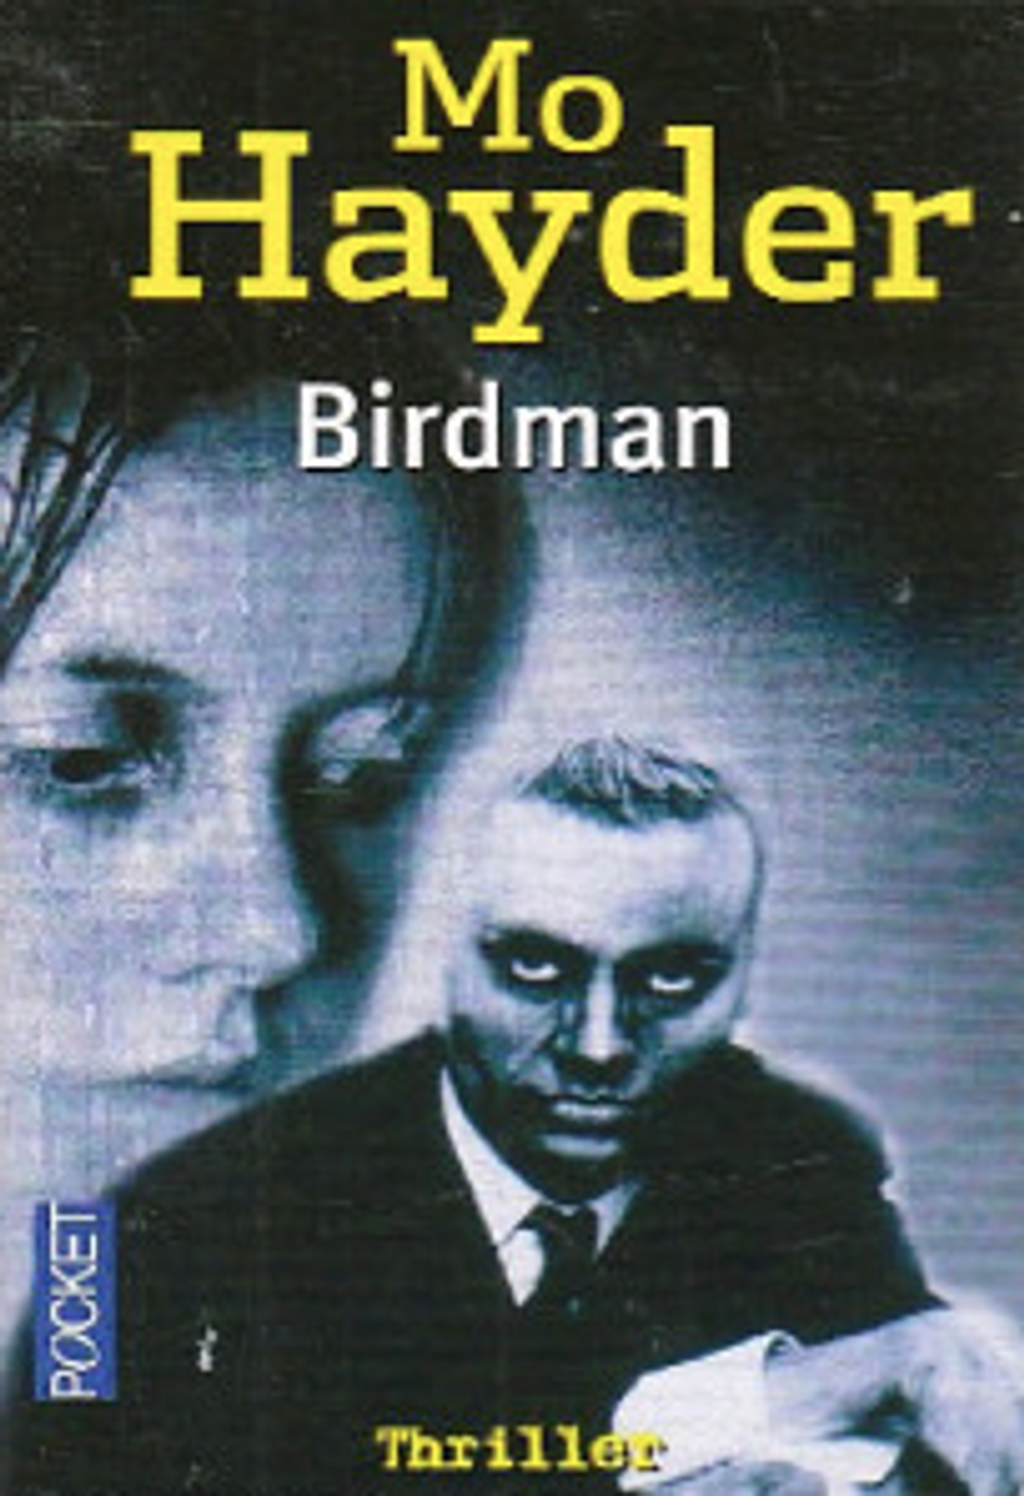 Birdman - Mo Hayder - LE - 9.png